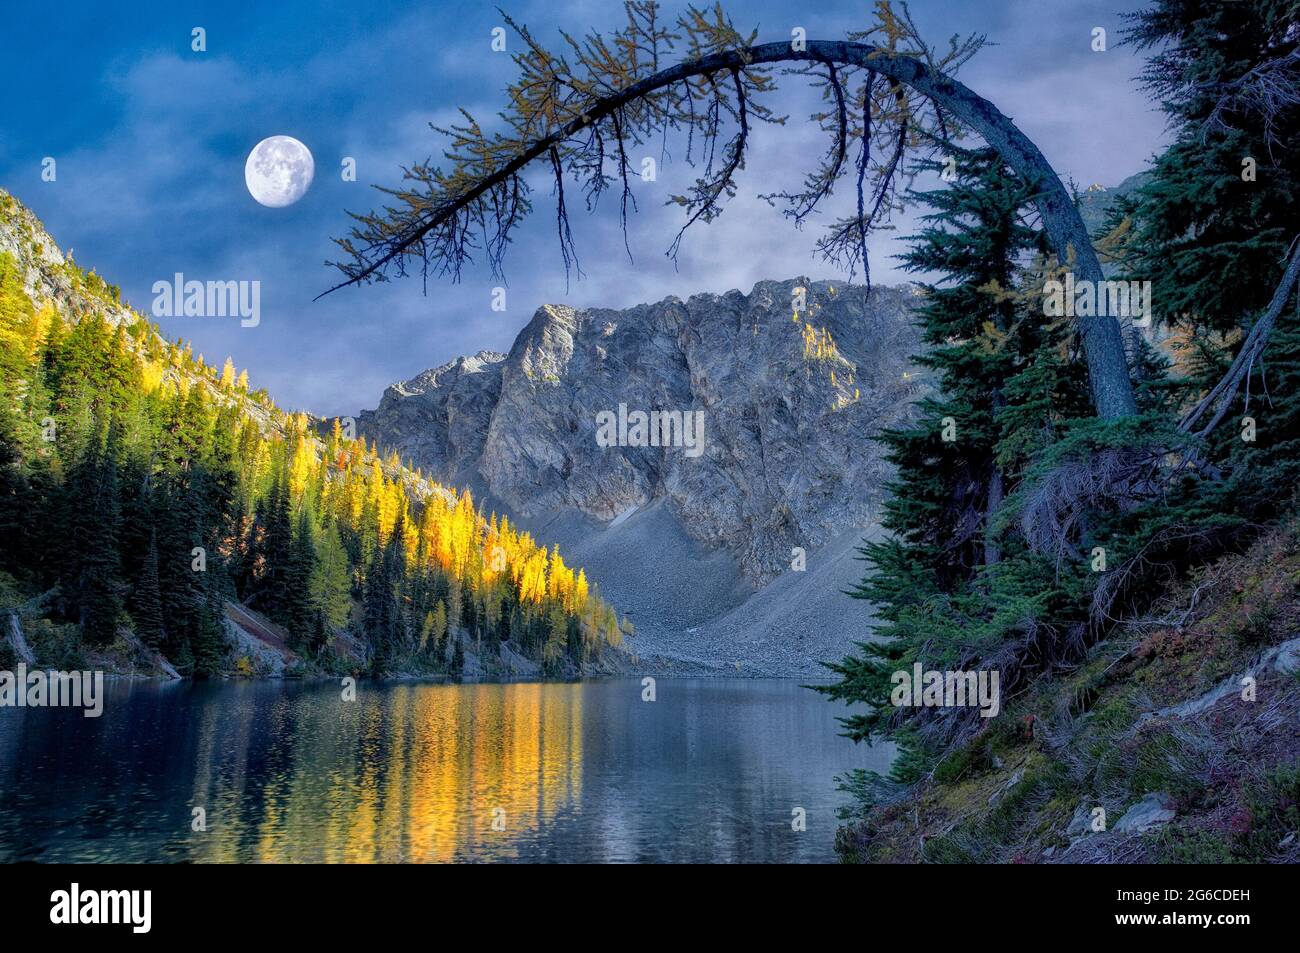 Blue Lake mit Tamarack- oder Lärchenbäumen, die sich in Herbstfarbe und Mond spiegeln. North Cascades National Park. Washington. mond wurde hinzugefügt Stockfoto